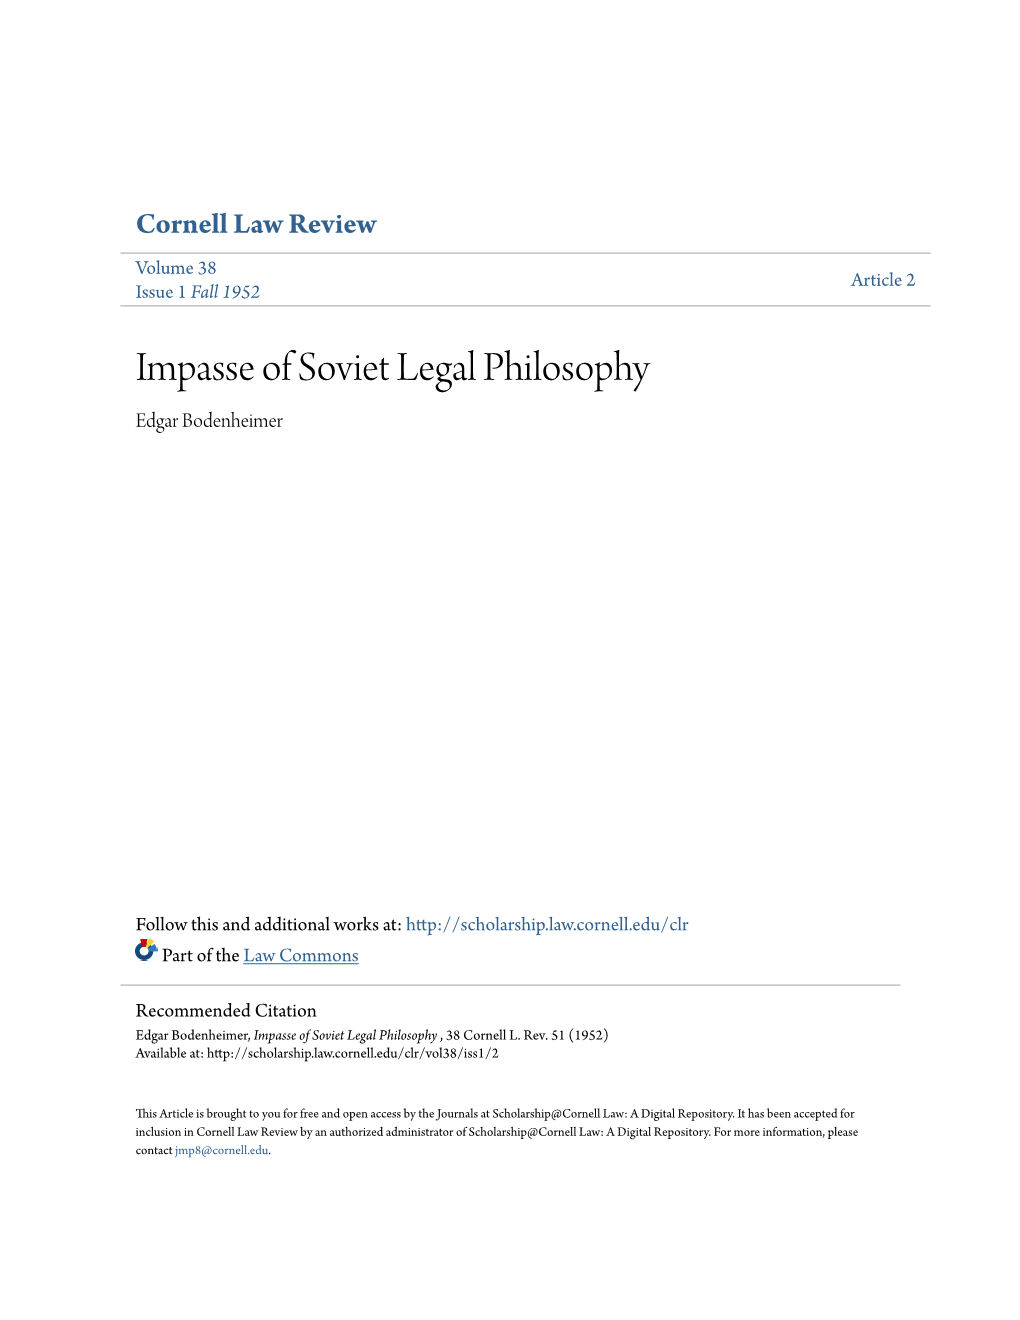 Impasse of Soviet Legal Philosophy Edgar Bodenheimer